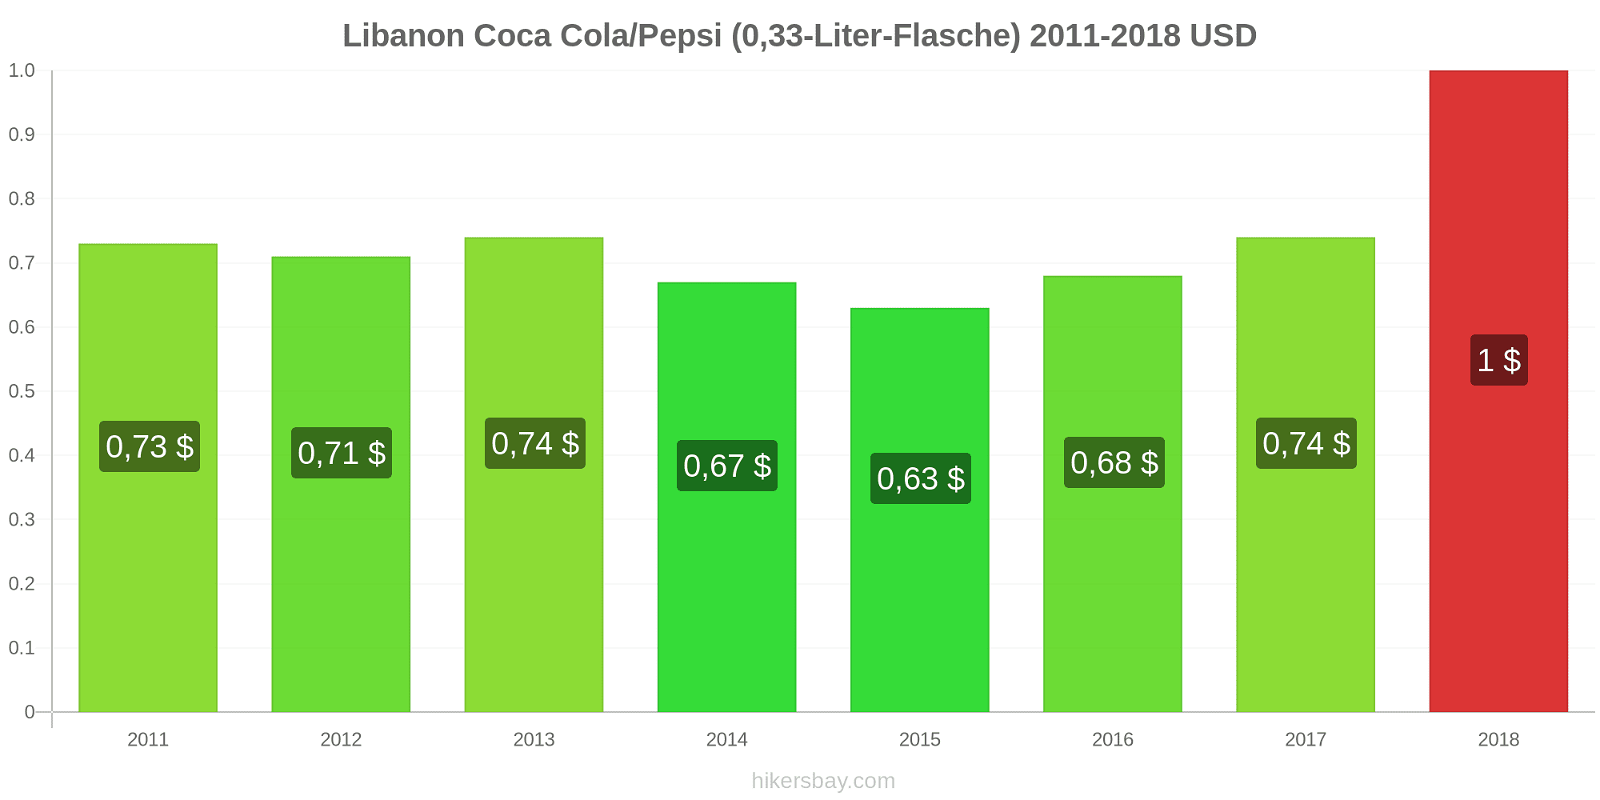 Libanon Preisänderungen Coke/Pepsi (0,33-Liter-Flasche) hikersbay.com